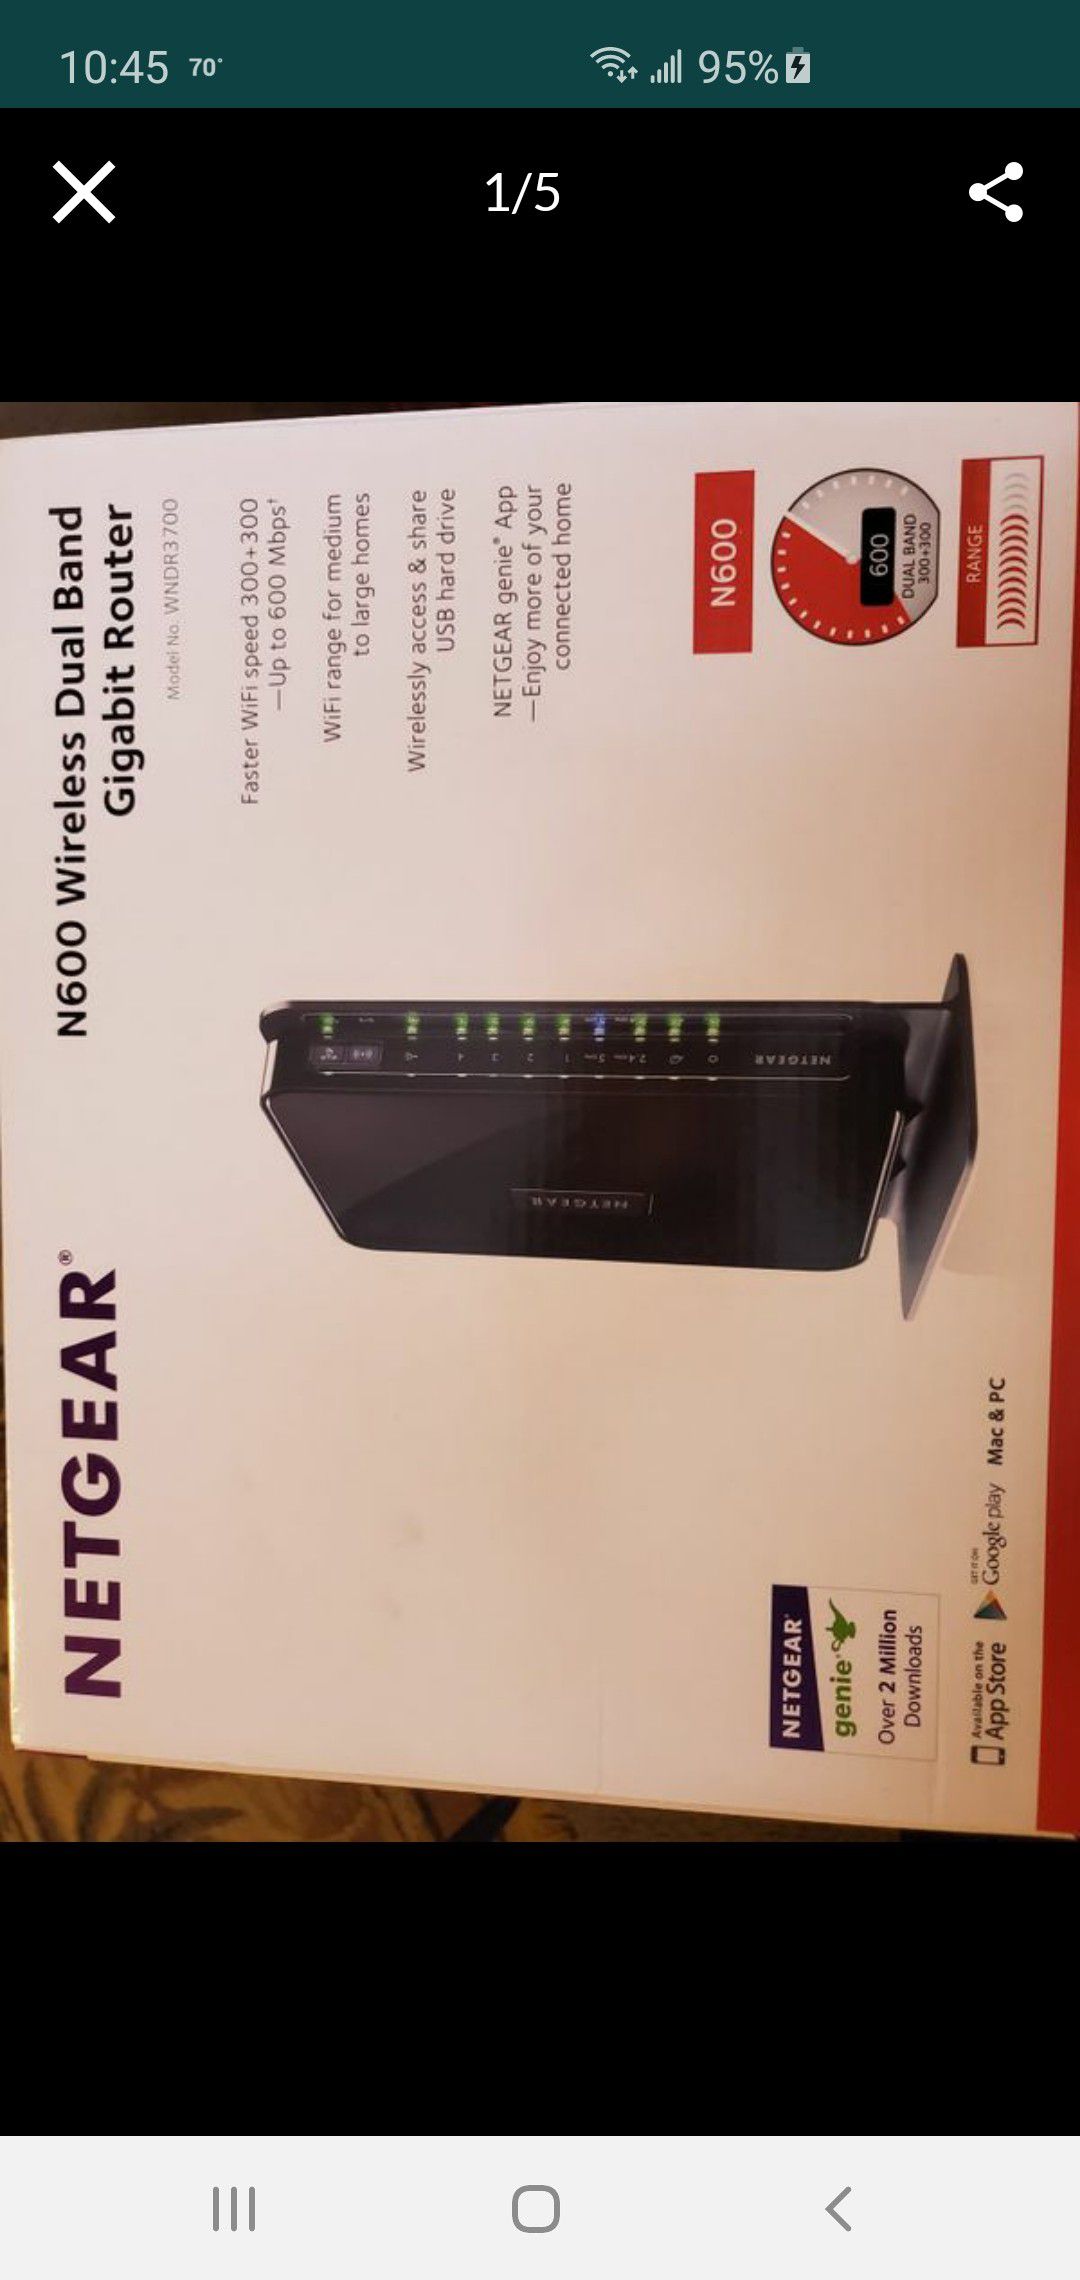 Netgear N600 wireless router